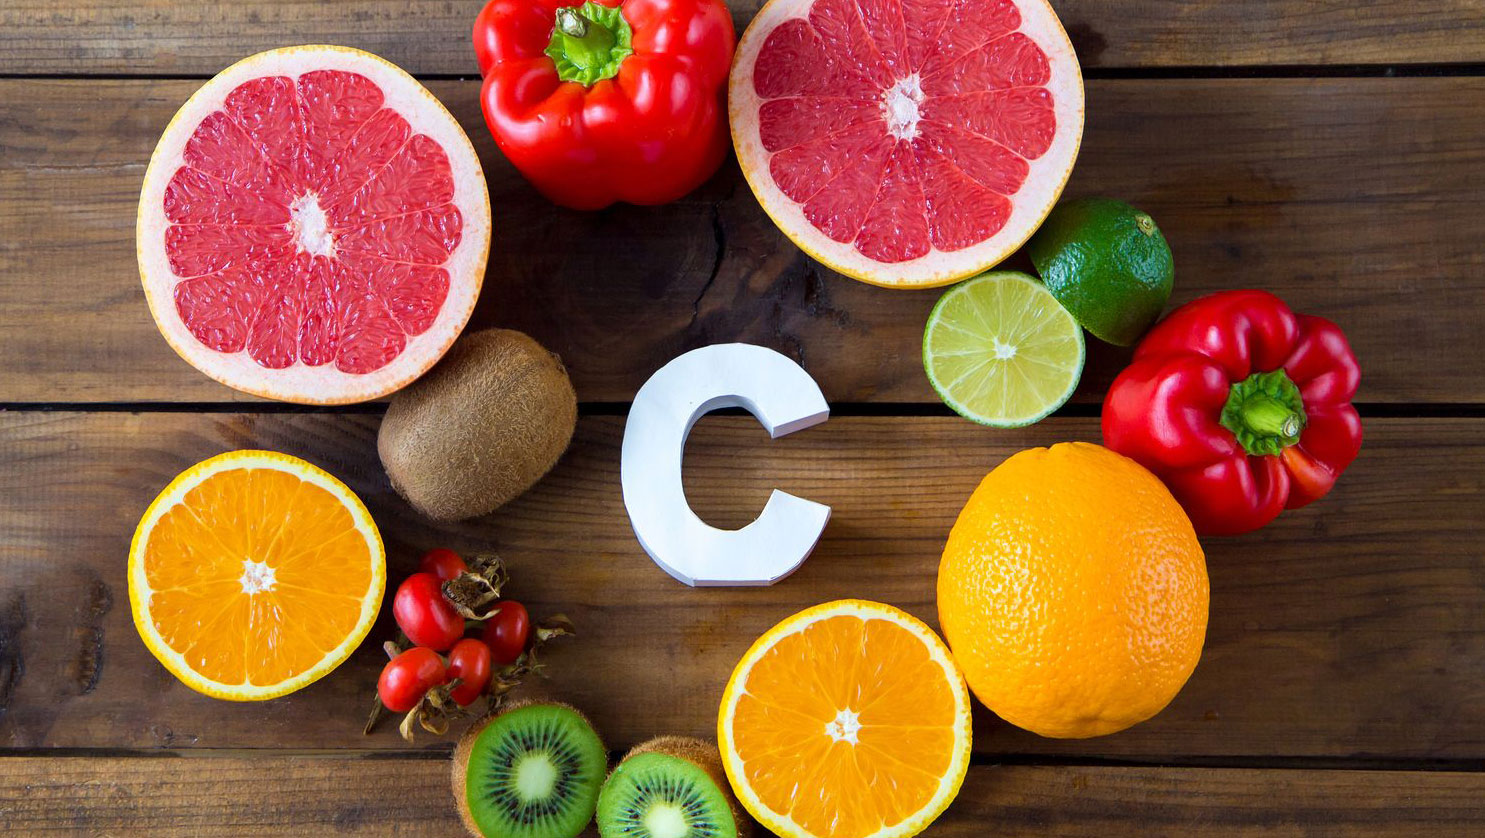 La vitamina C ¿Qué sabemos hoy en día? – ALANUR